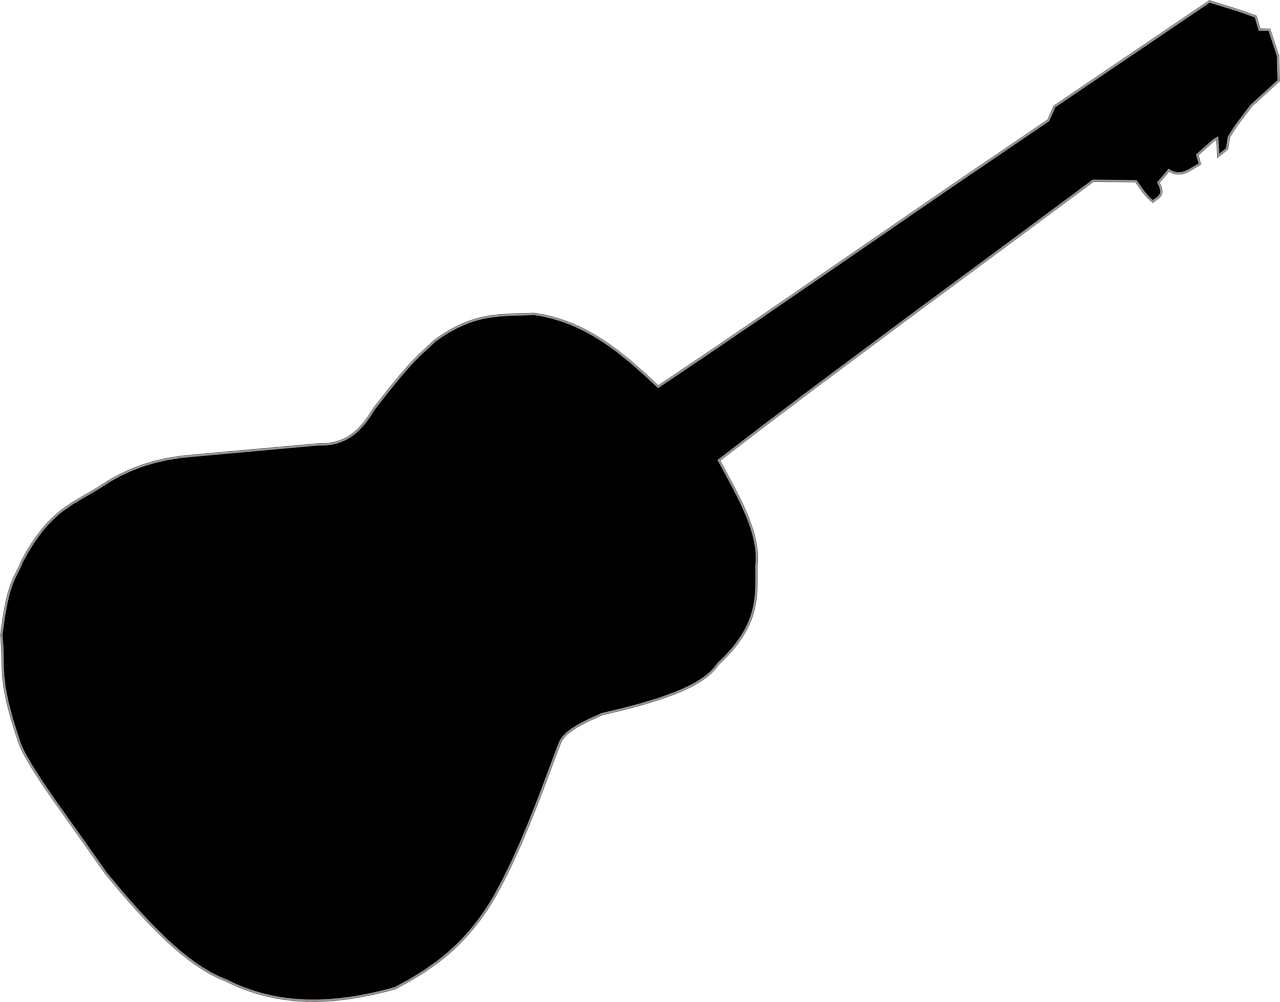 Guitar clipart vector. Imagen gratis en pixabay